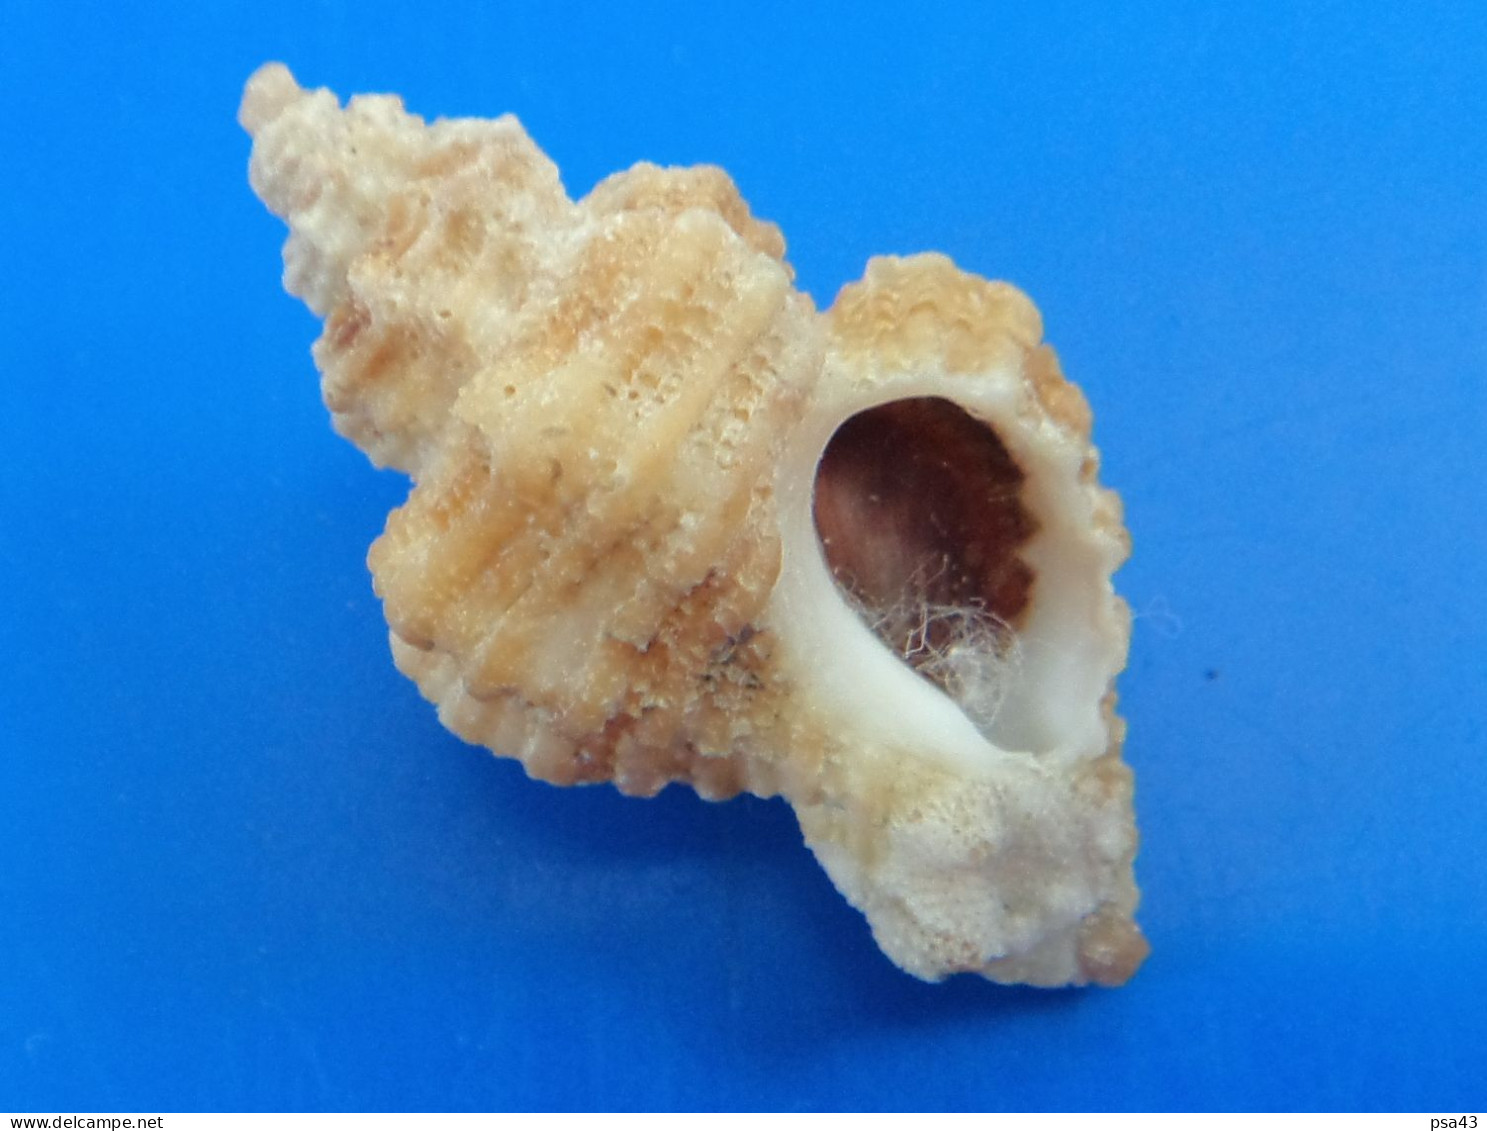 Ocenebra Erinacea Jersey 28,1mm F+++/GEM WO N9 - Seashells & Snail-shells